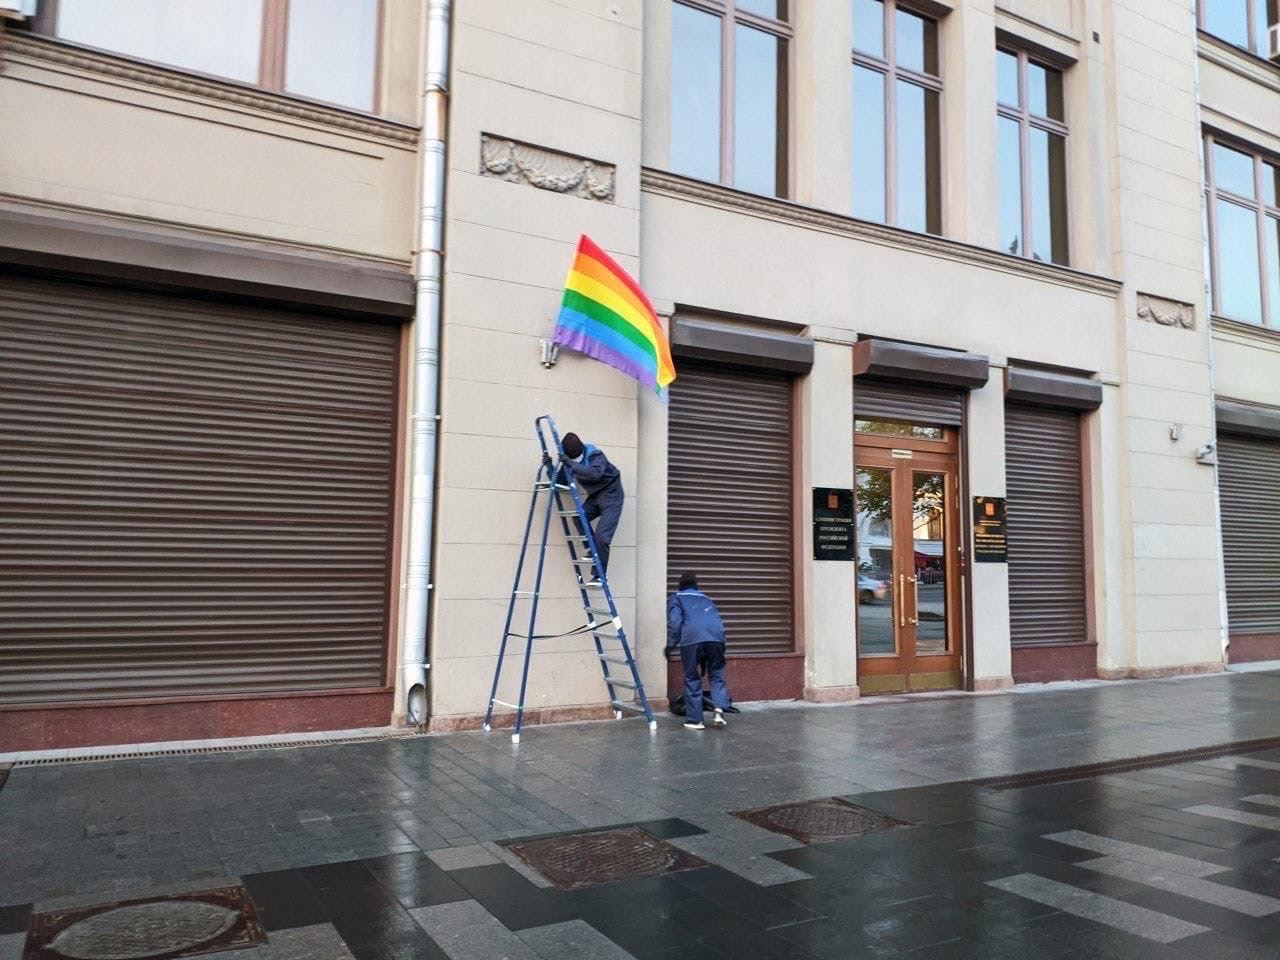 На зданиях ФСБ и АП появились радужные флаги

Группа Pussy Riot сегодня утром вывесила символ ЛГБТ-с...